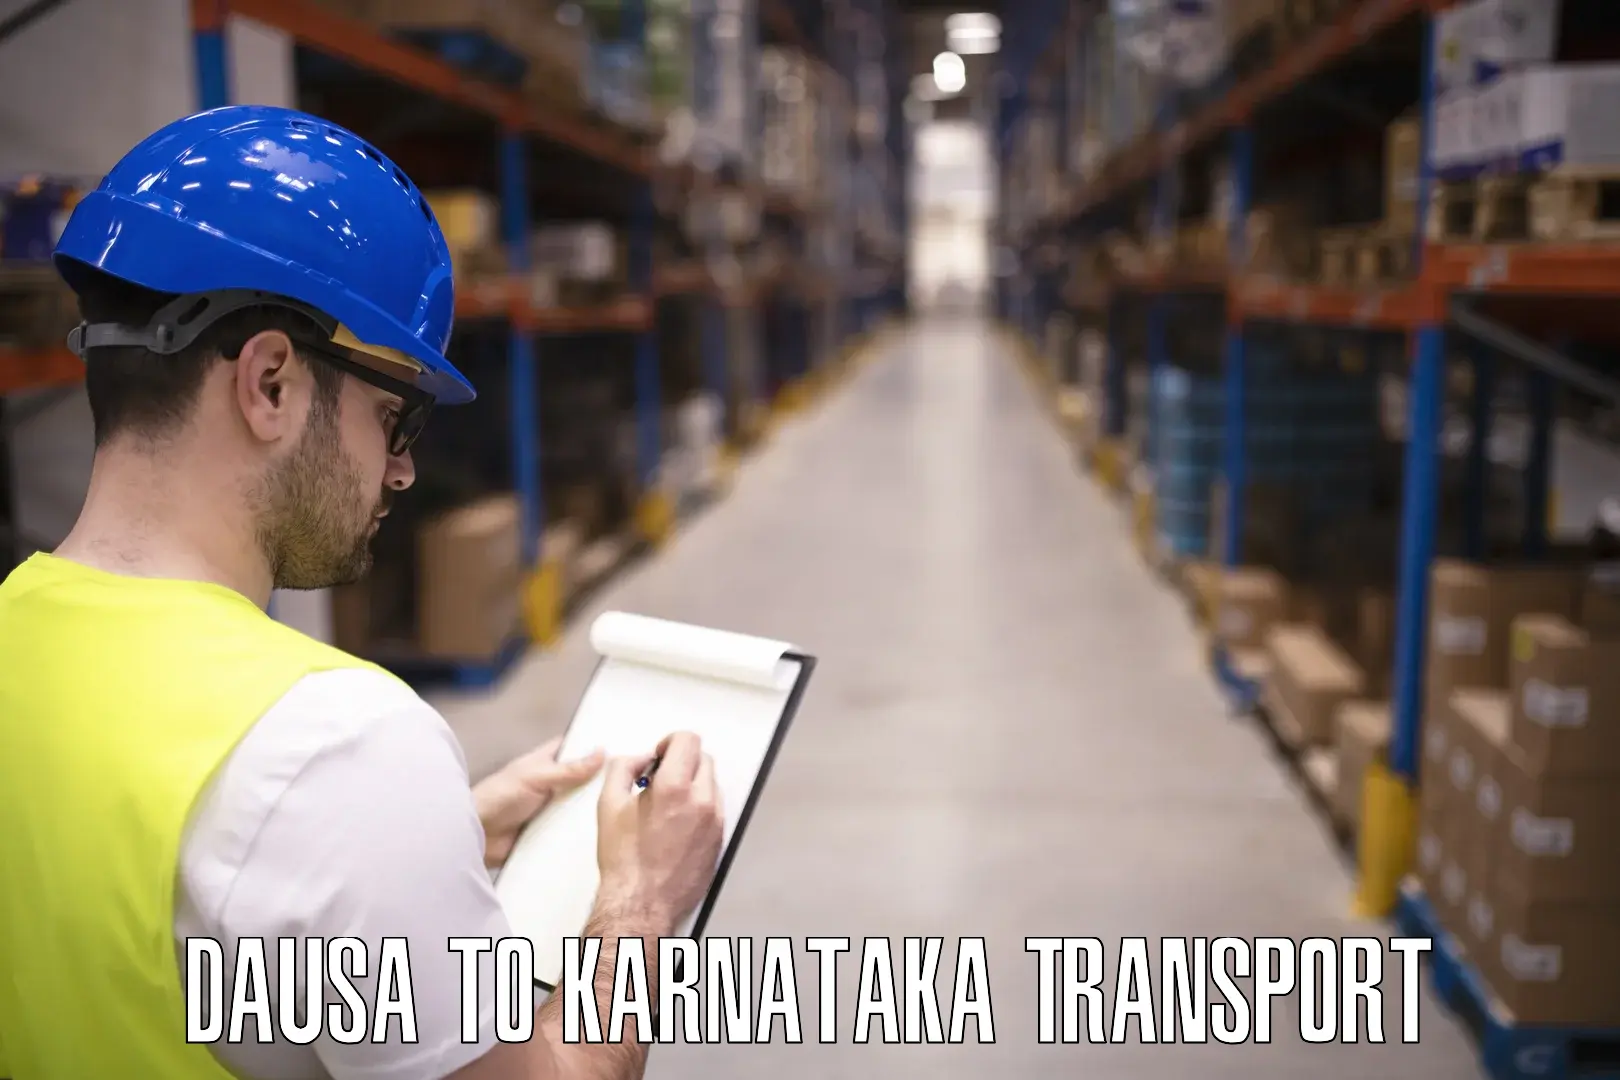 Cargo transportation services Dausa to Karkala